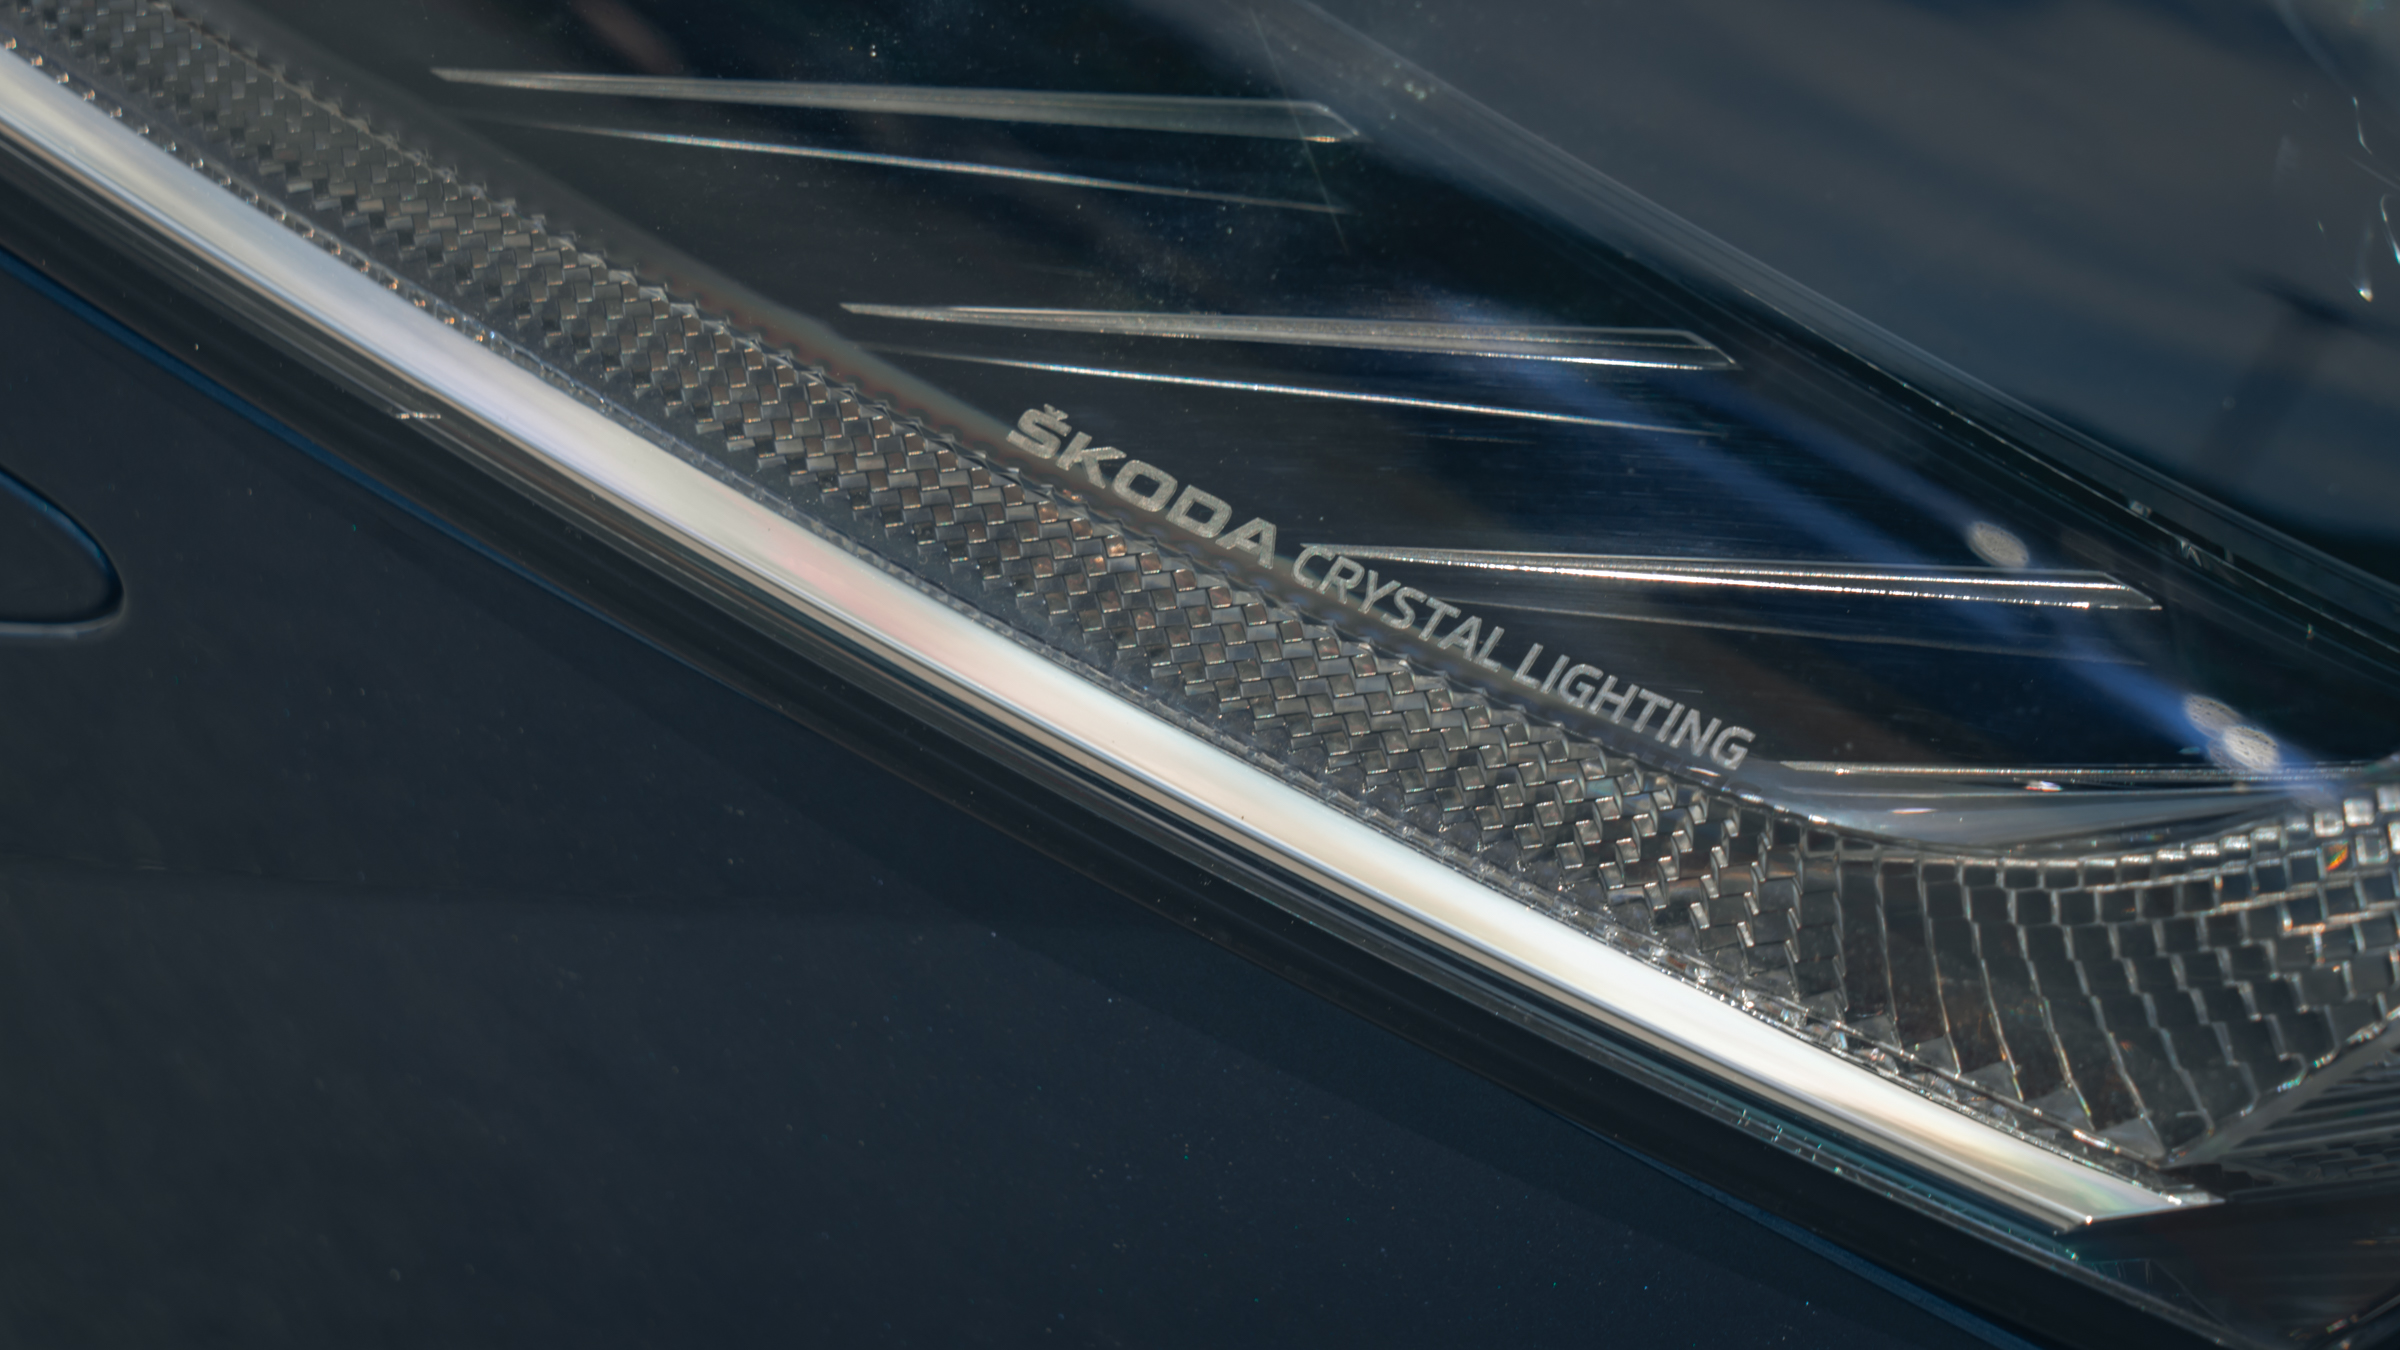 導入「Škoda Crystal Lighting」科技，可避免對向來車眩光、增加夜間行車能見度與安全性。